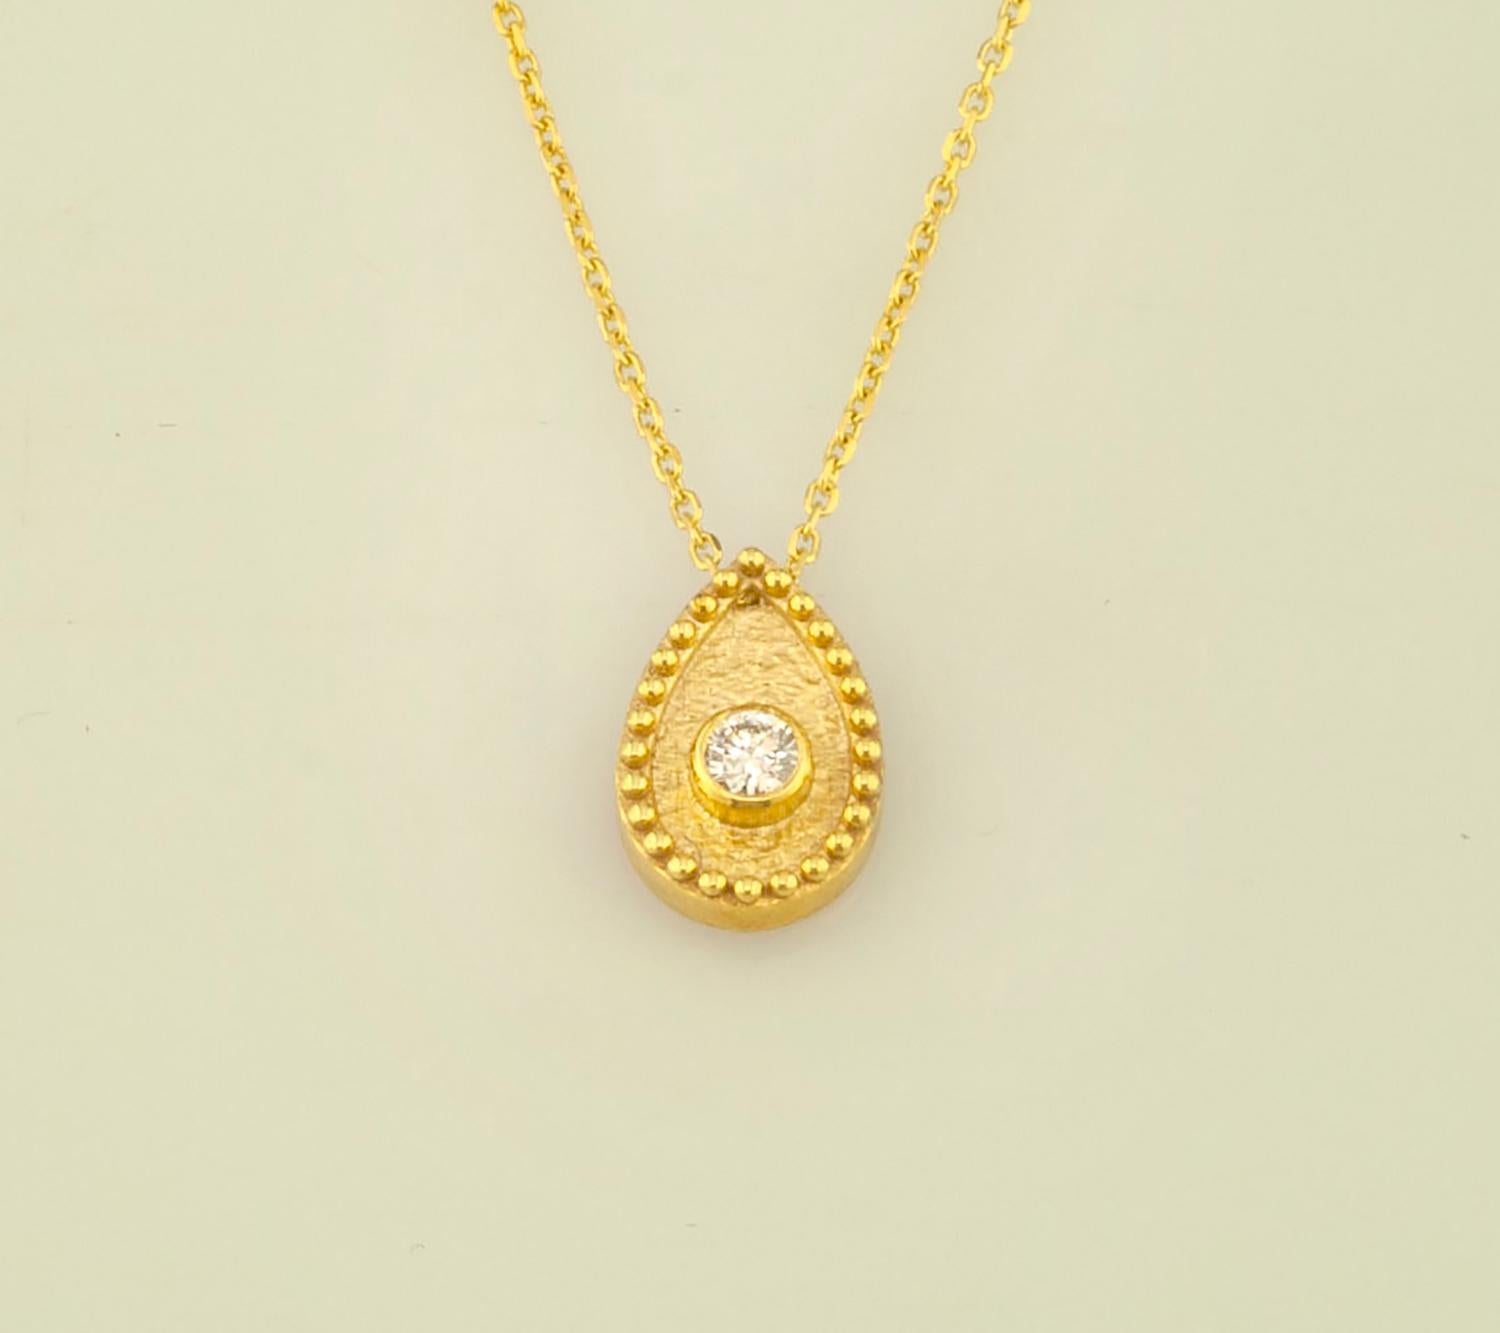 Diese S.Georgios Designer-Halskette ist aus 18 Karat Gelbgold und mikroskopisch verziert mit handgefertigter Perlengranulation und mit einem einzigartigen Samt-Hintergrund versehen. Diese wunderschöne tropfenförmige Halskette hat einen weißen